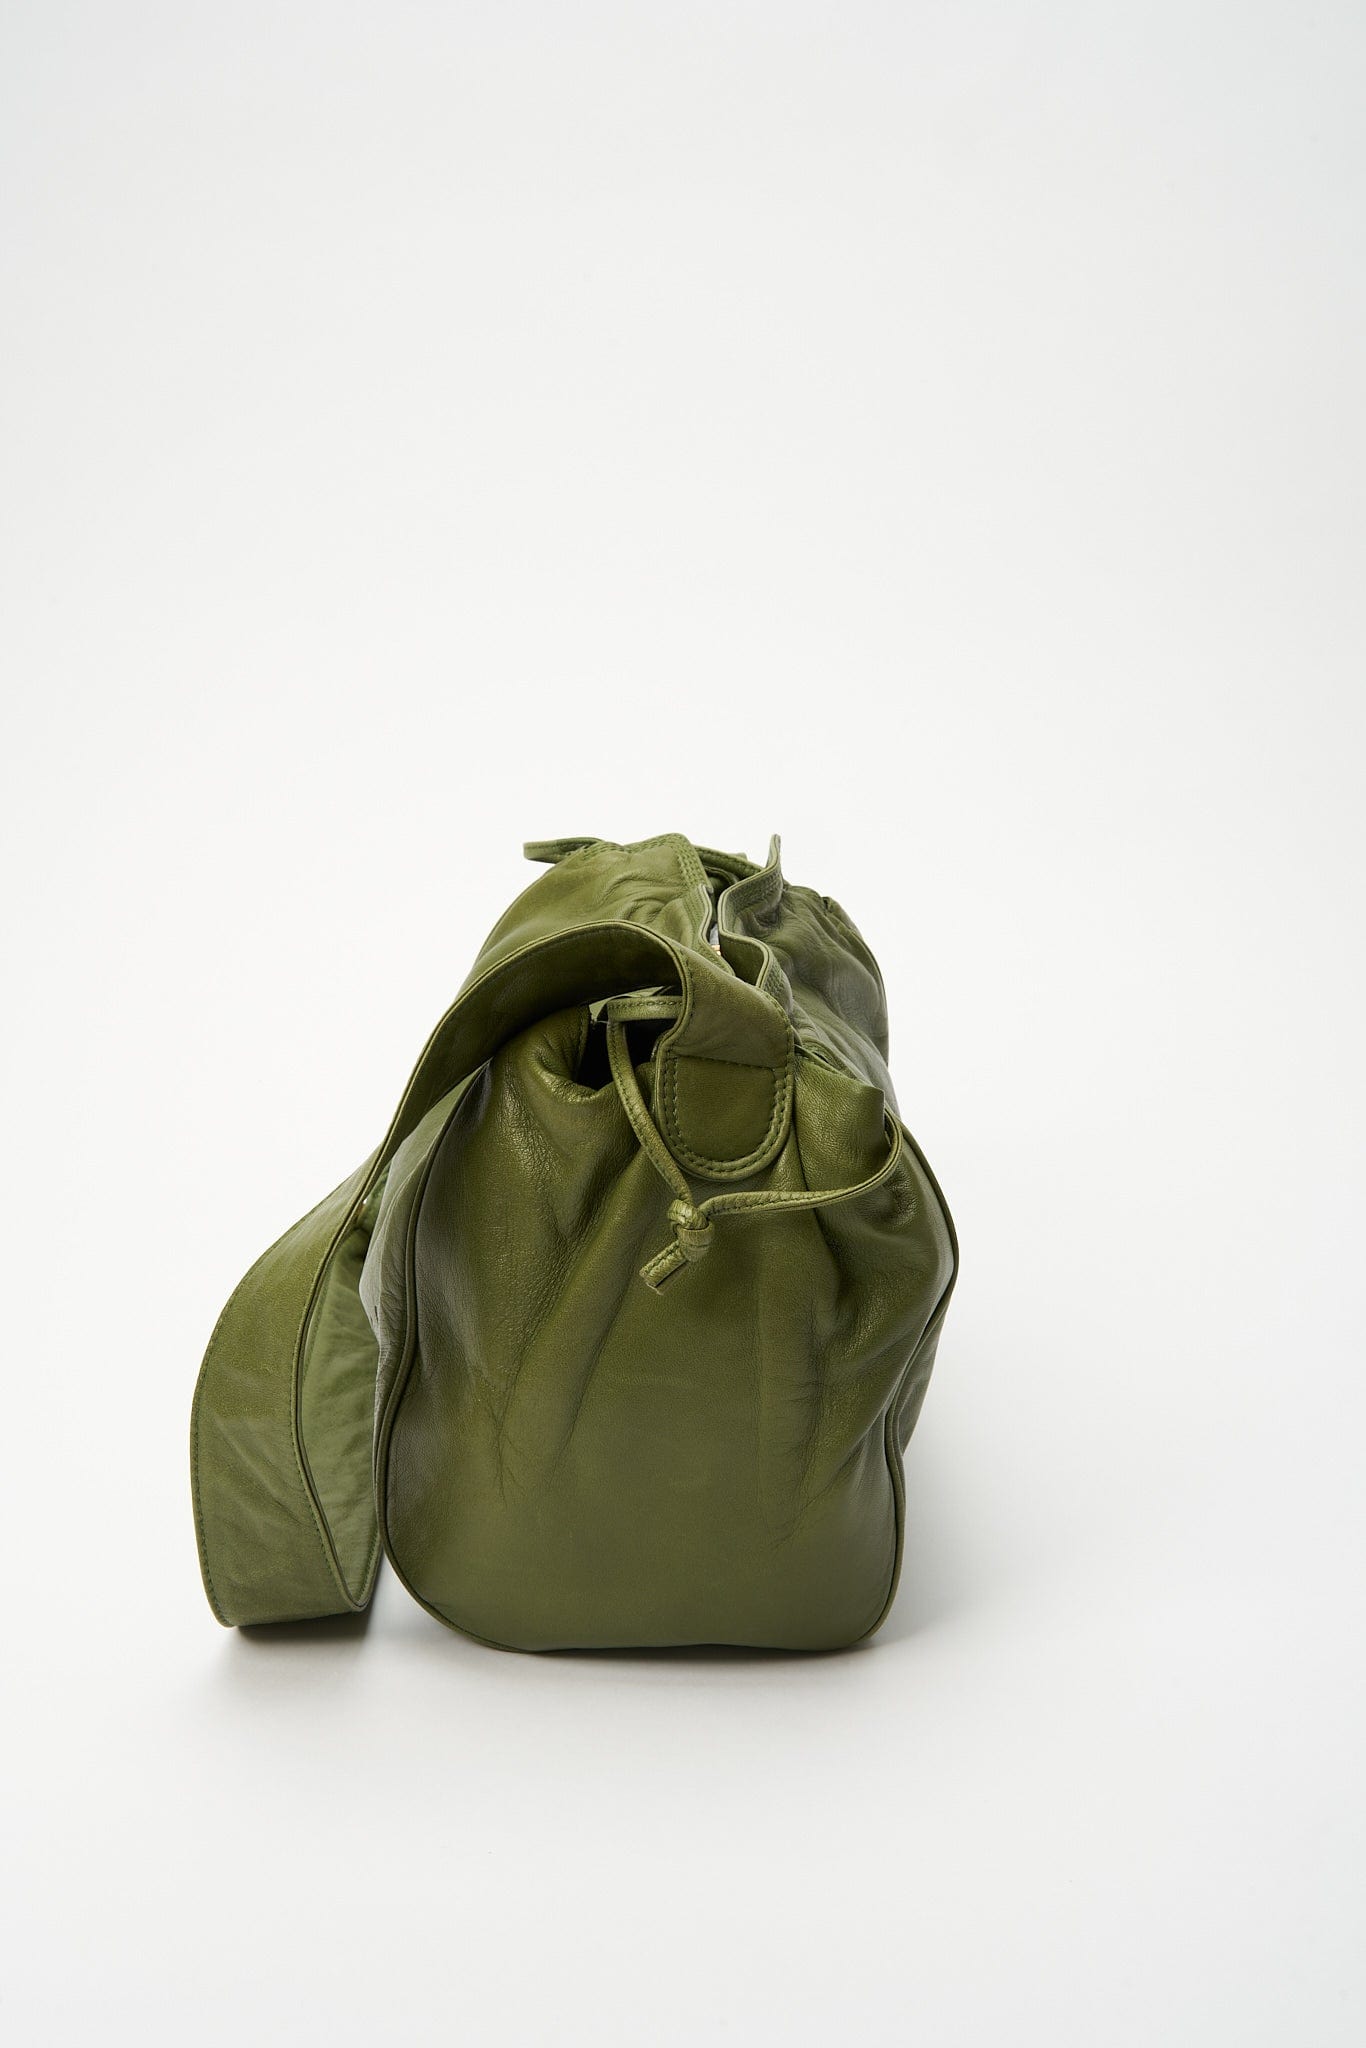 Vintage Loewe Green Crossbody Bag